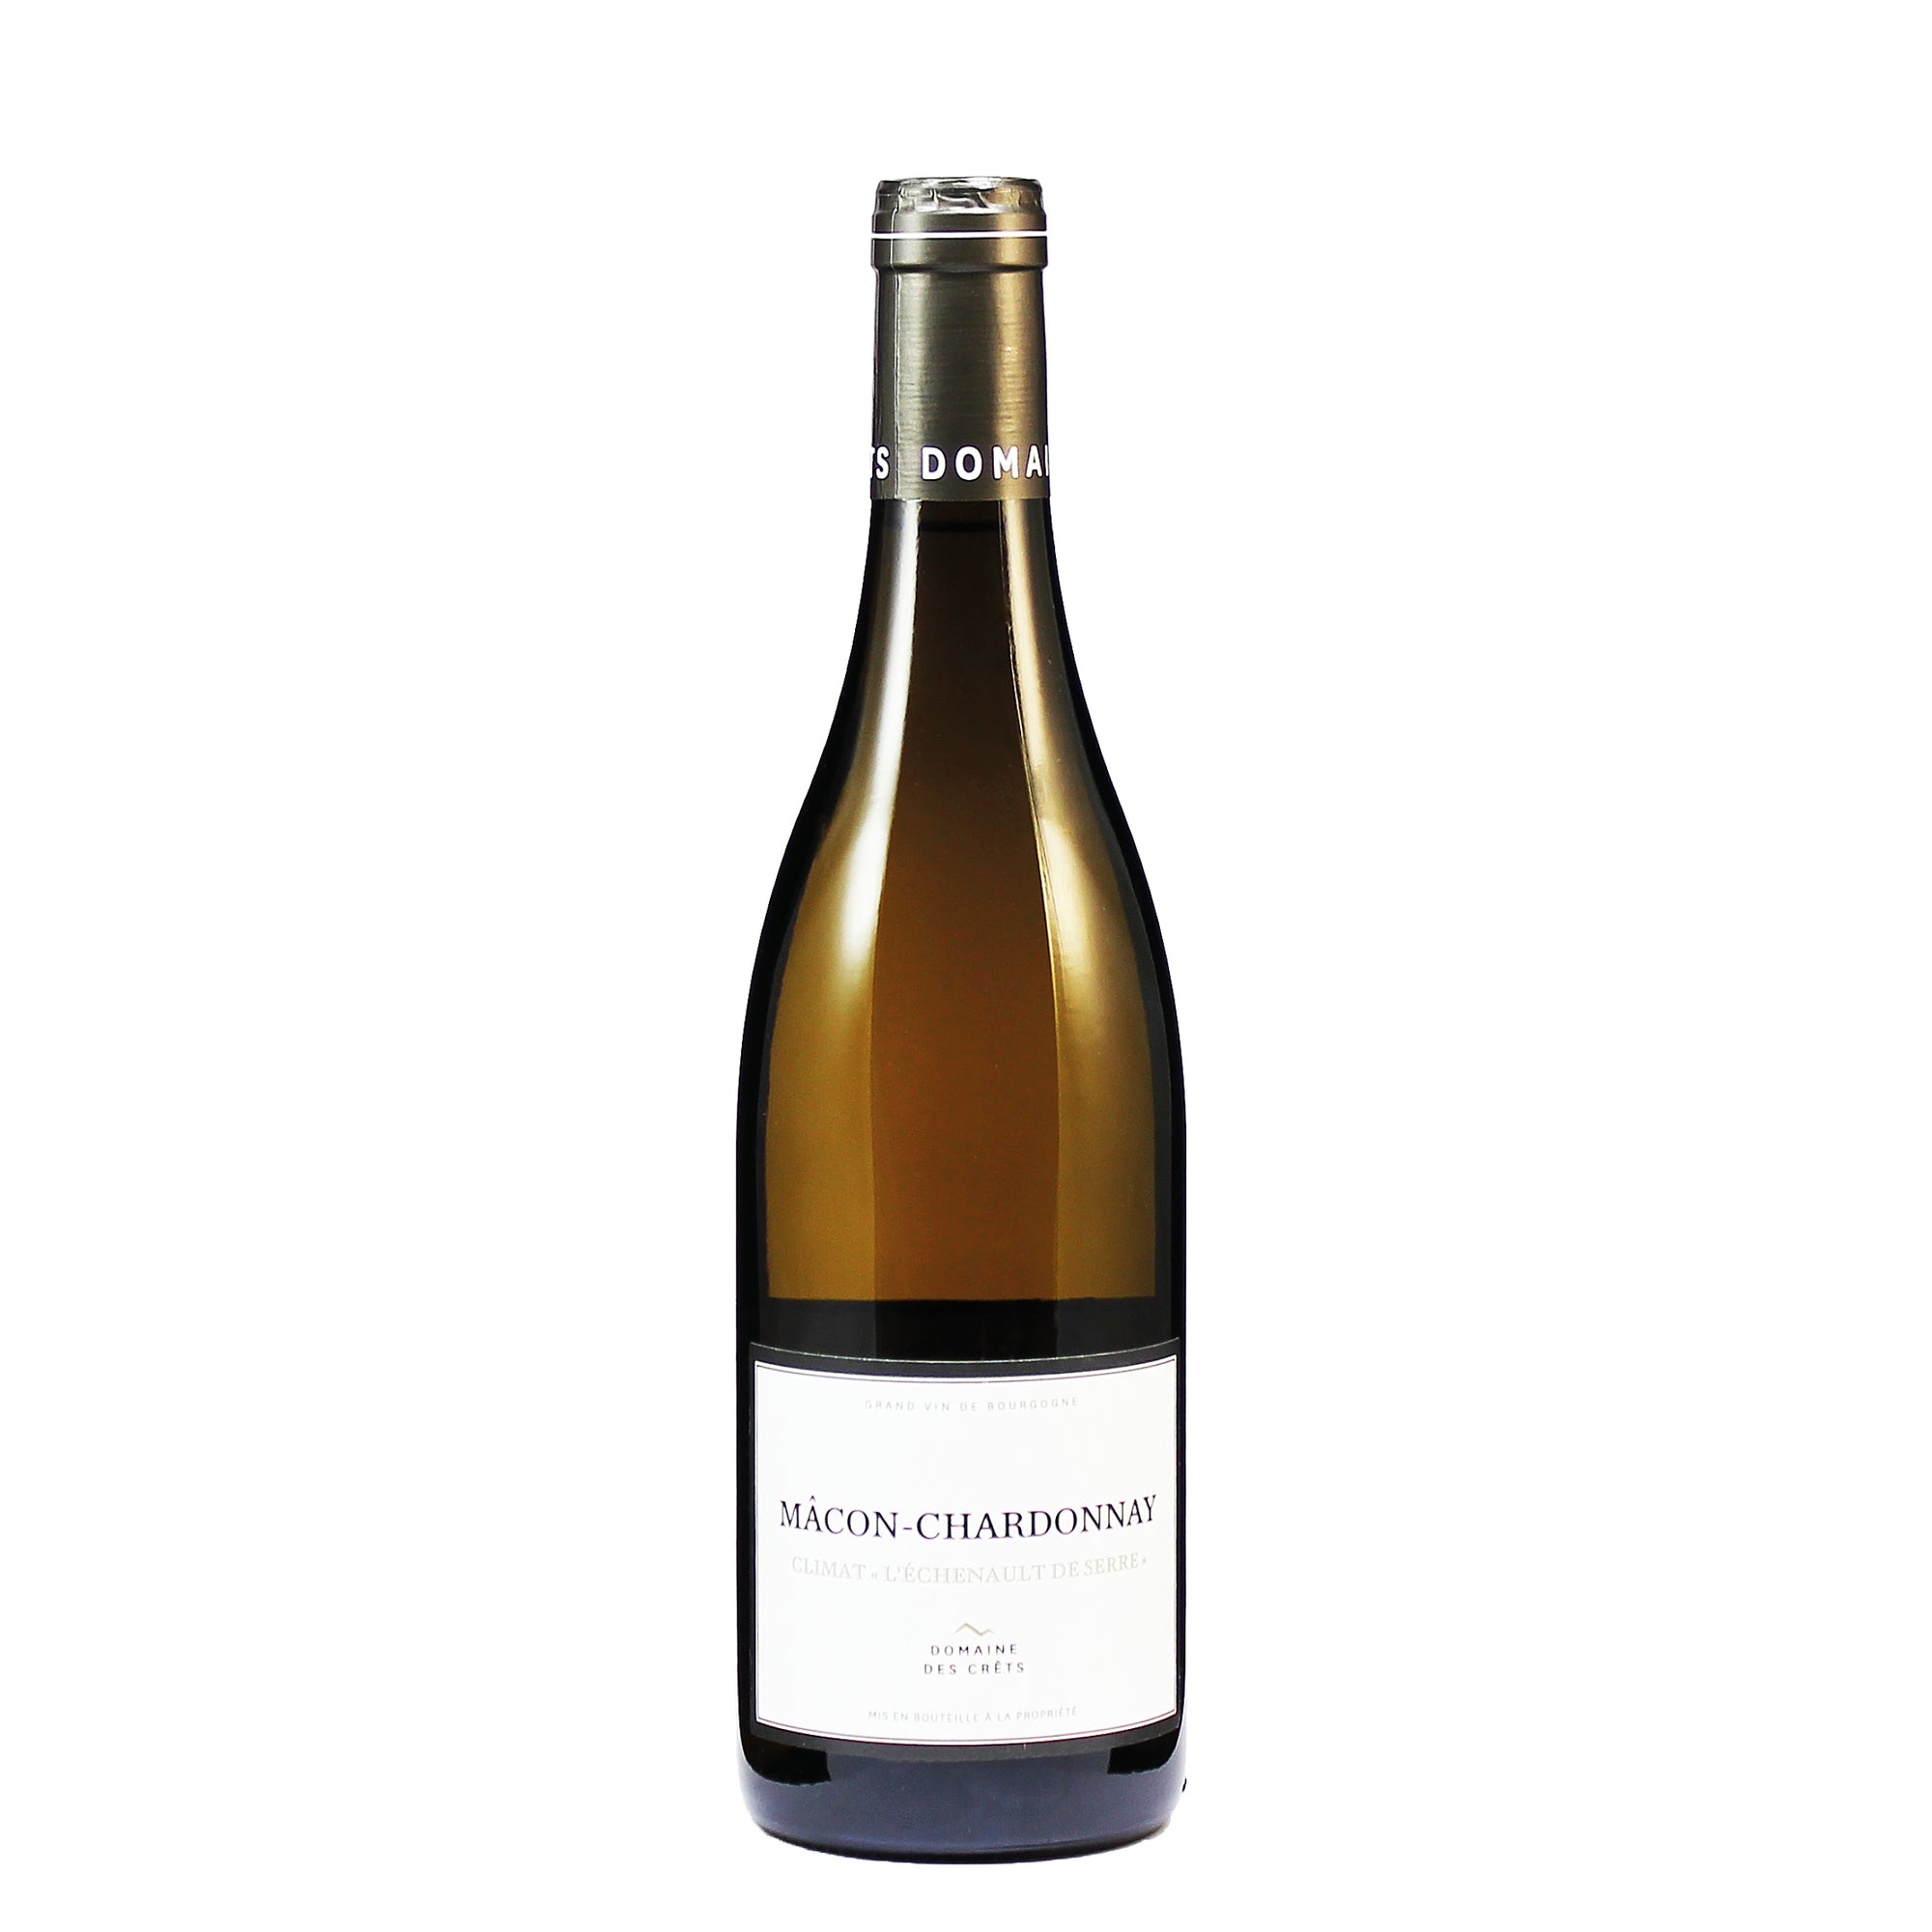 Macon-Chardonnay AOC 2018 <br> climat "l'echenault de serre"